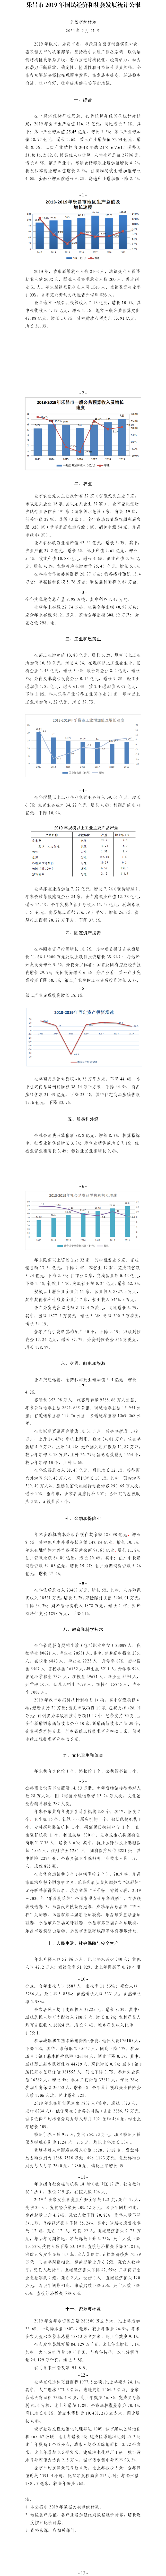 樂昌市2019年國民經濟和社會發展統計公報.png